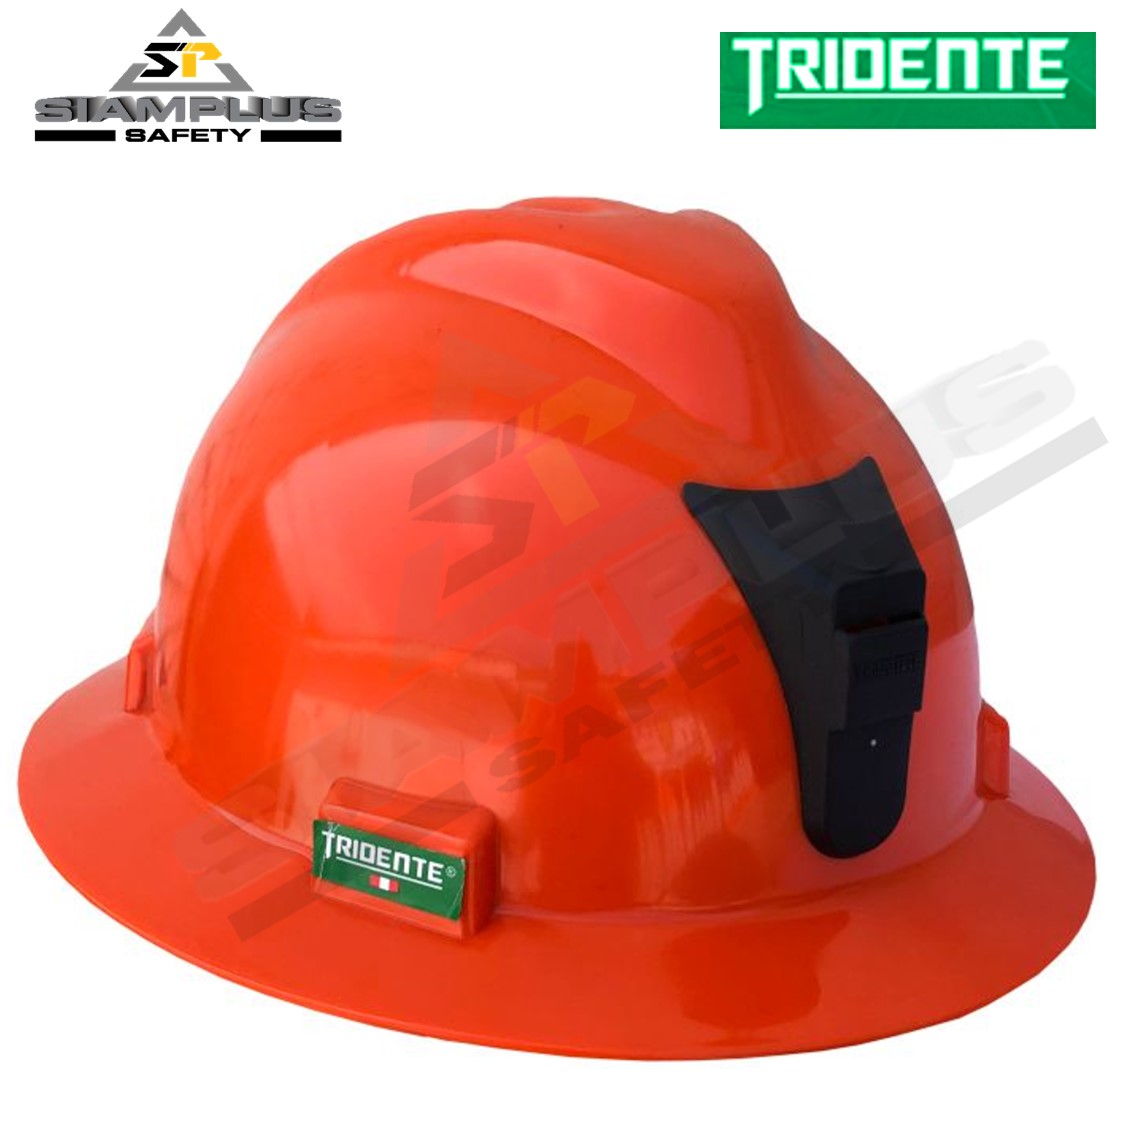 Casco de Seguridad Minero Tridente - Siamplus Safety